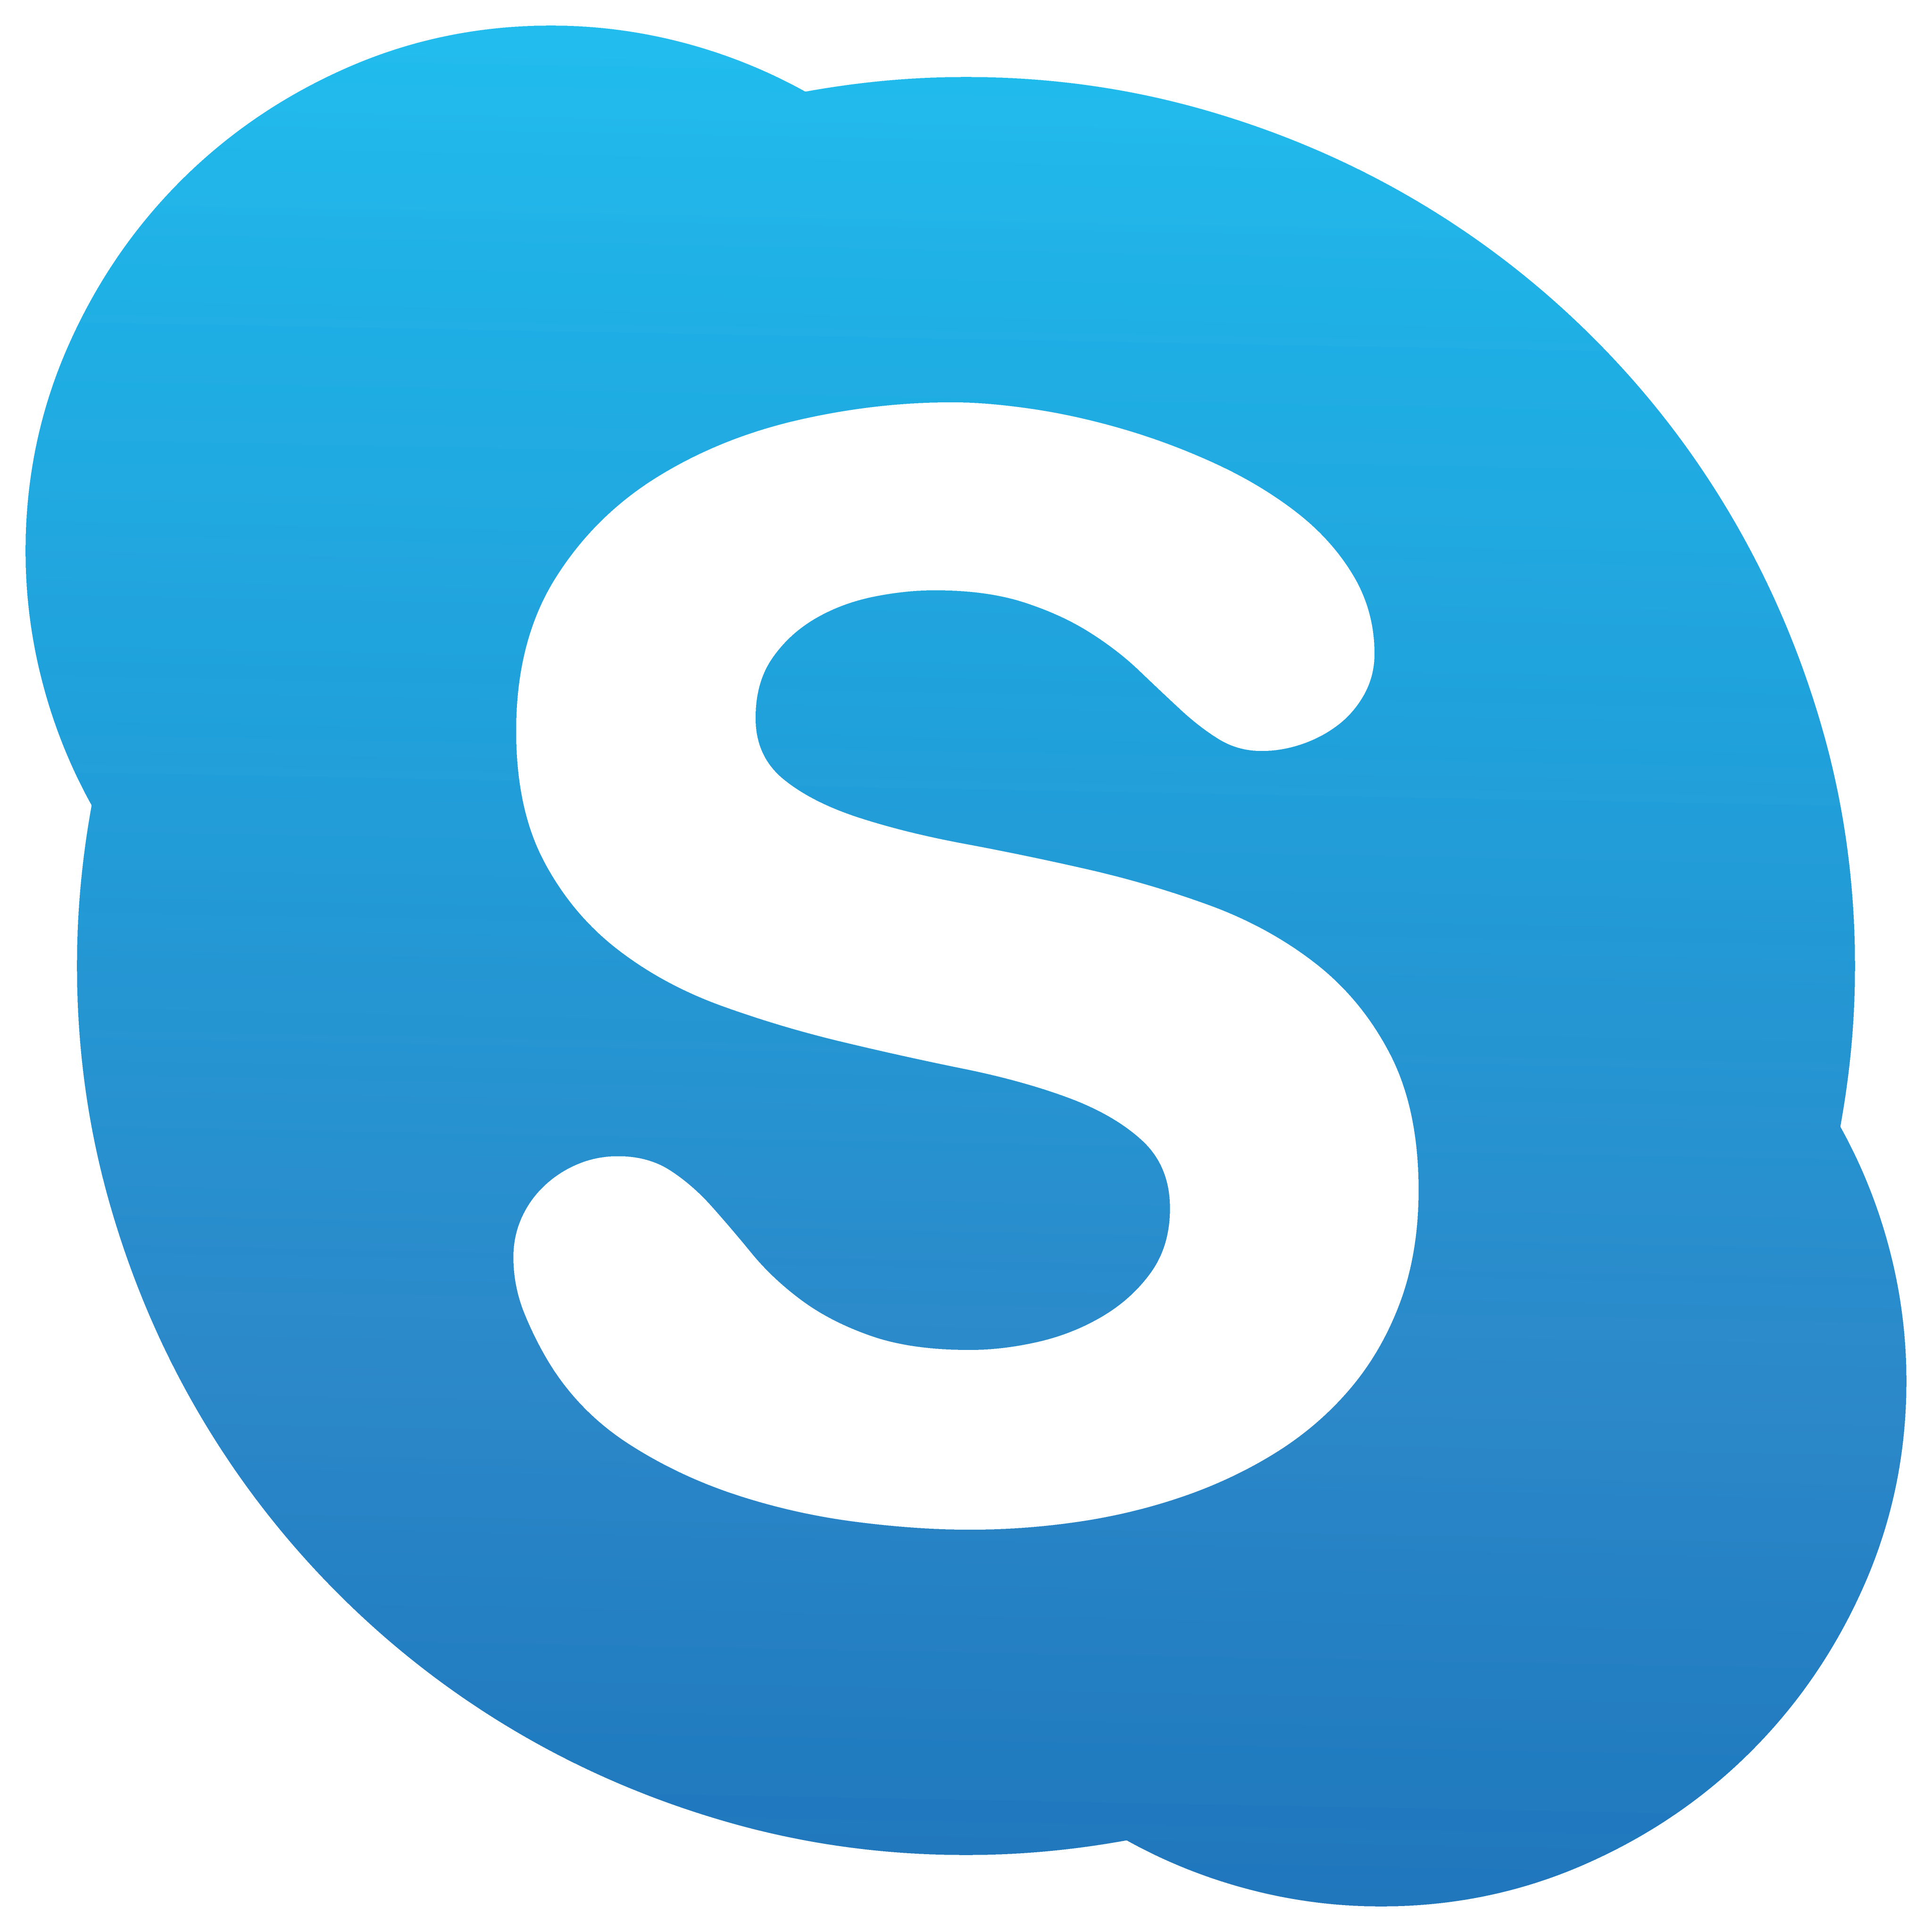 skype logo 16 - Skype Logo